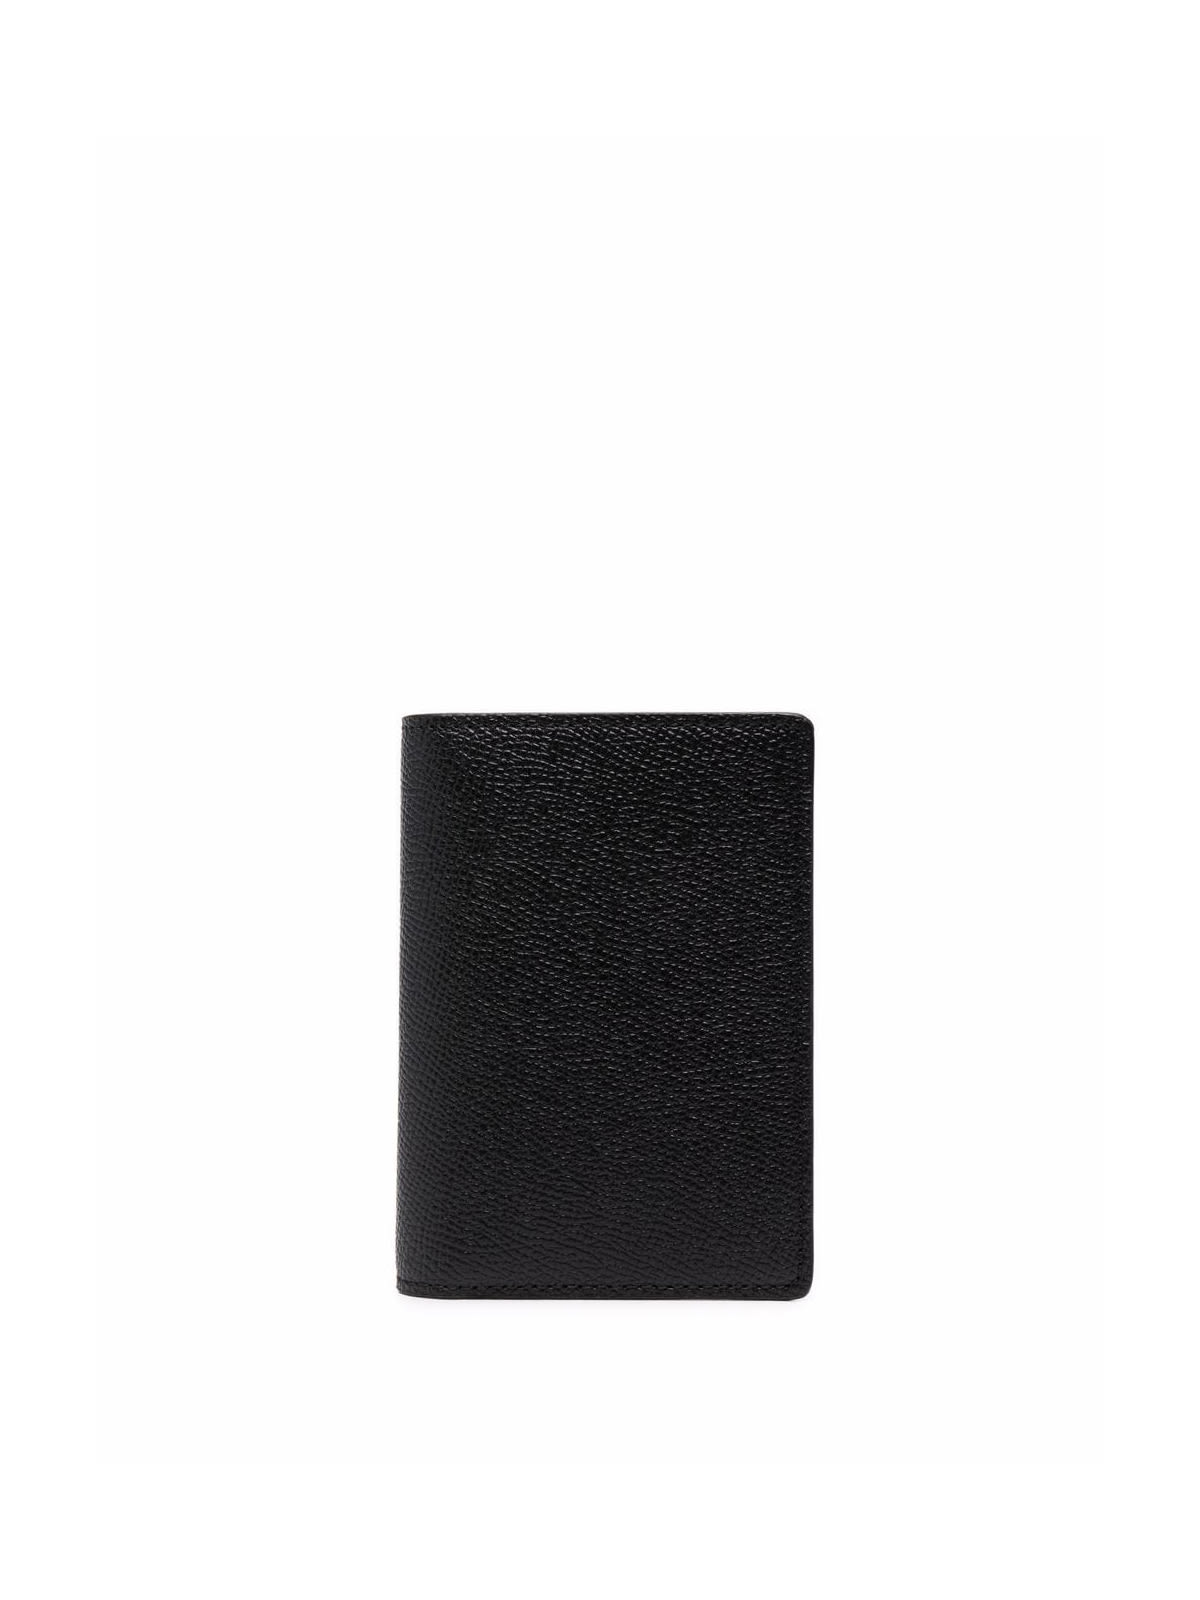 Maison Margiela Card Holder Slim 2 In Black